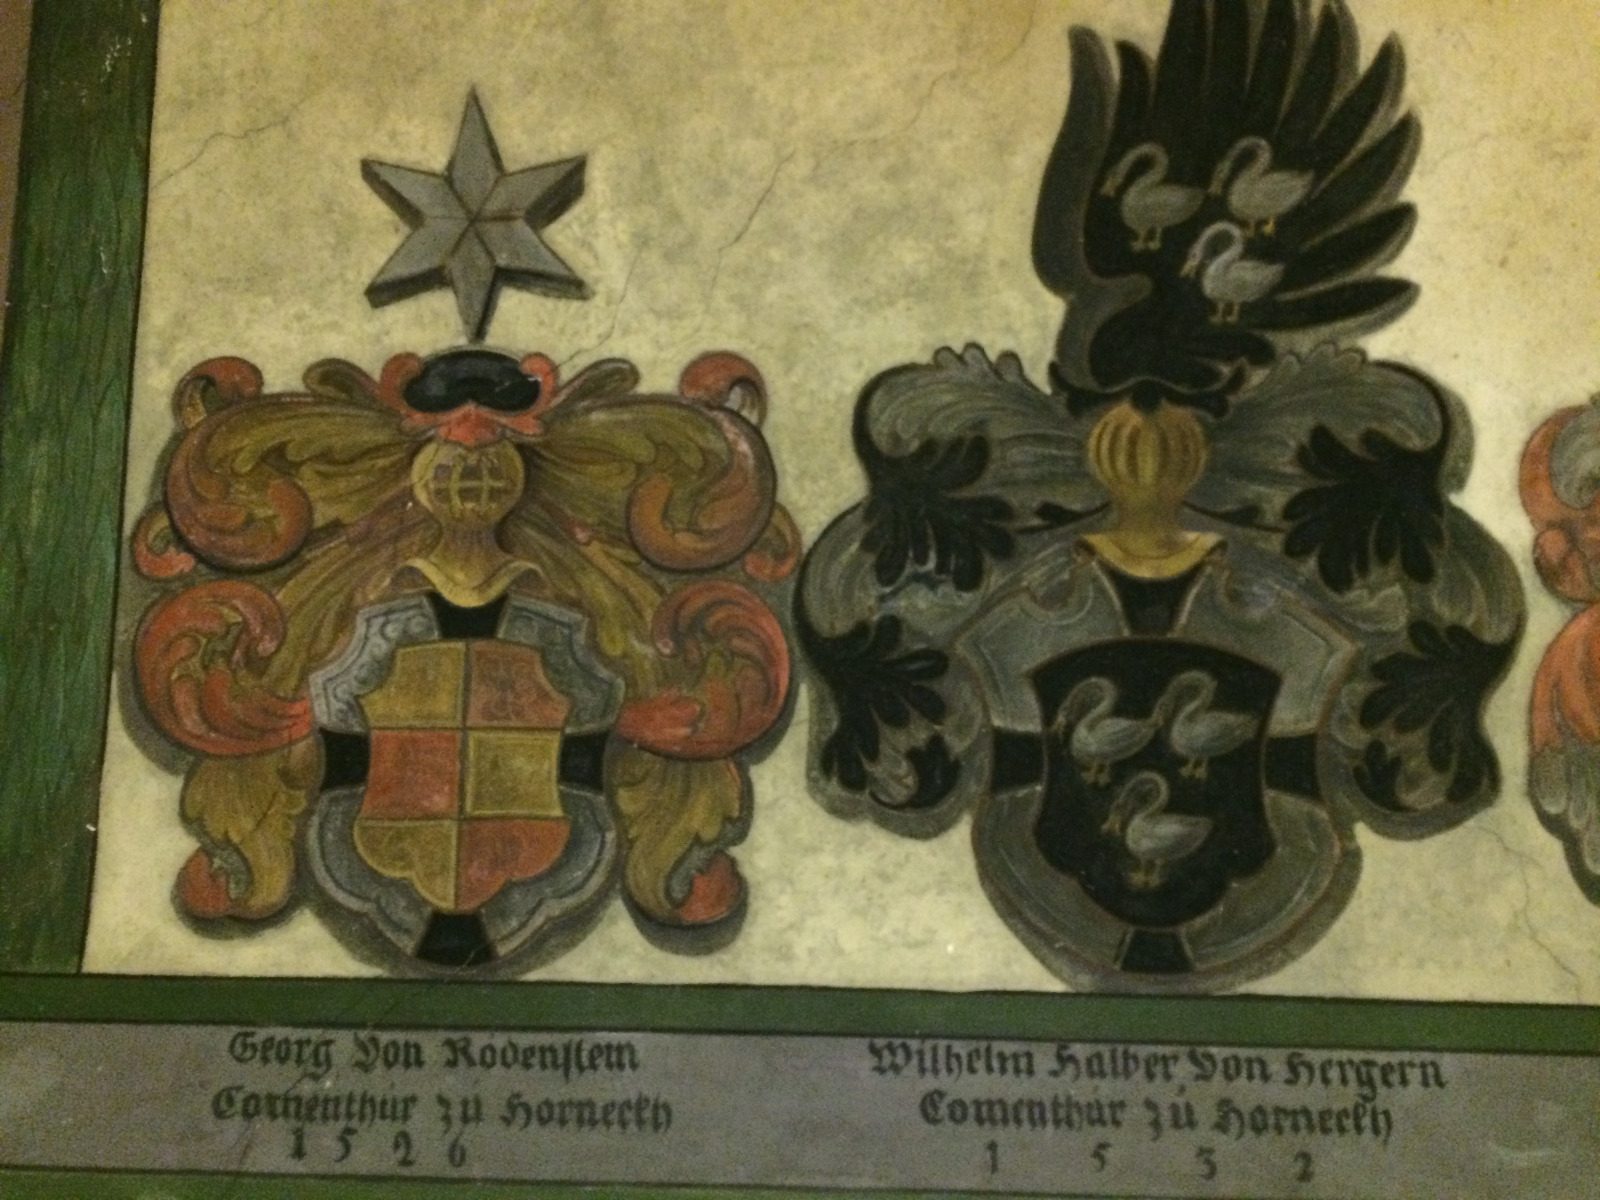 Das Bild zeigt in einer Nahaufnahme die Wappen von Georg von Rodenstein und Wilhelm Halber von Hergern.